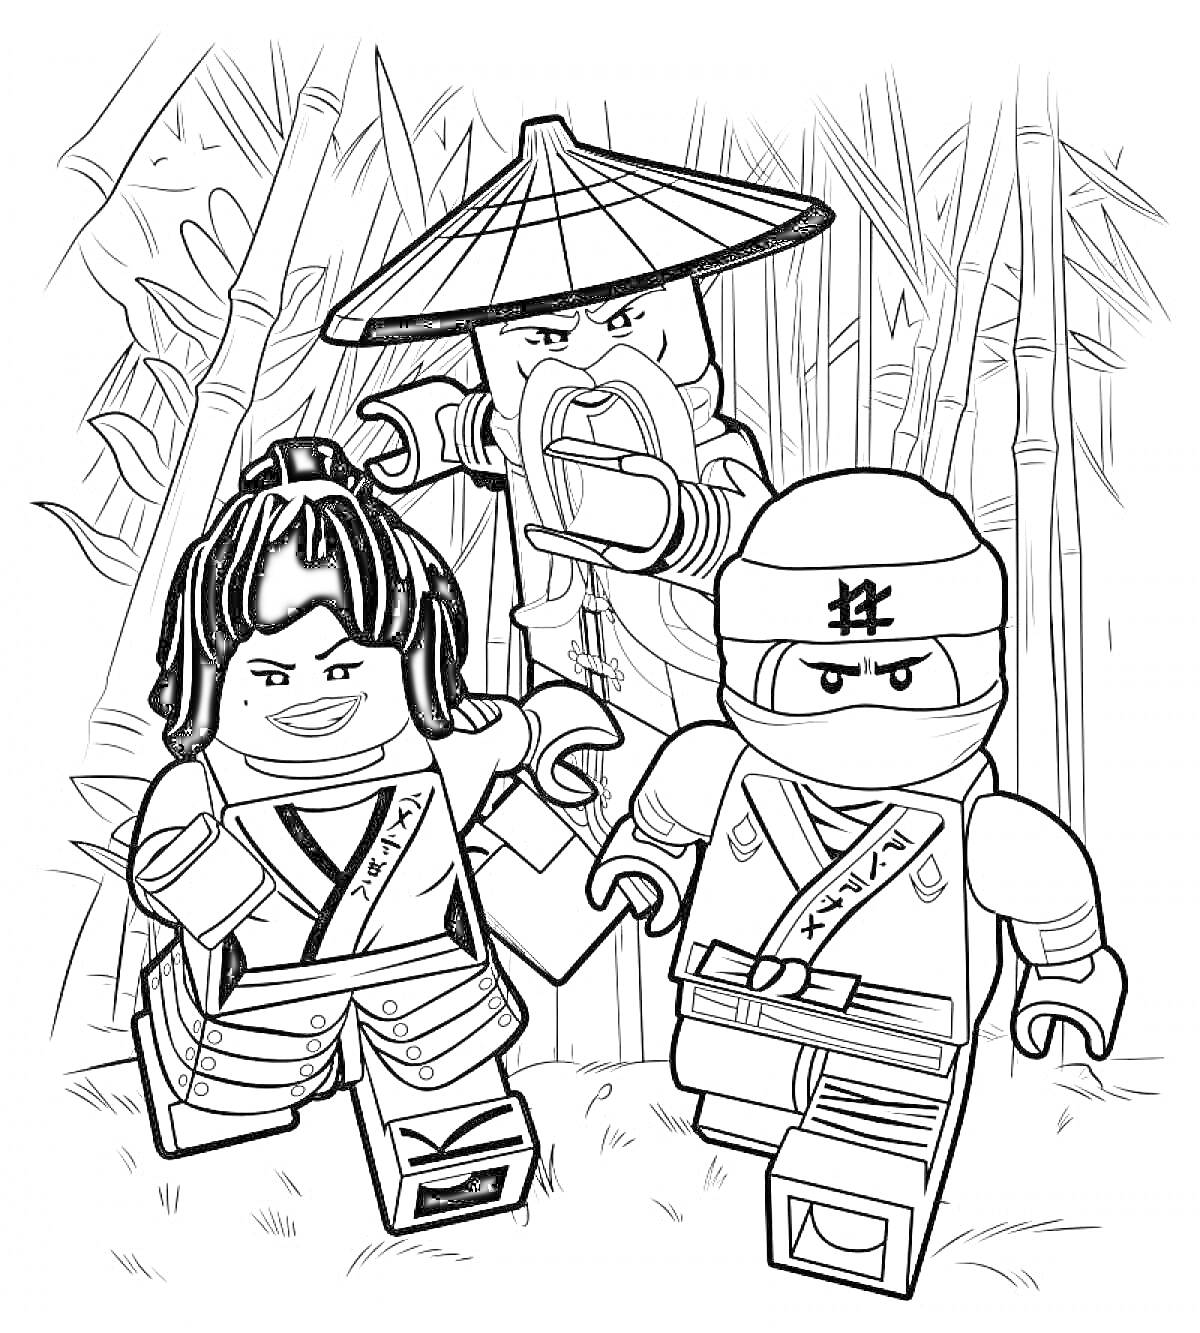 Три персонажа Лего Ниндзяго в бамбуковом лесу, в центре старик в соломенной шляпе, впереди парень-ниндзя и девушка-ниндзя